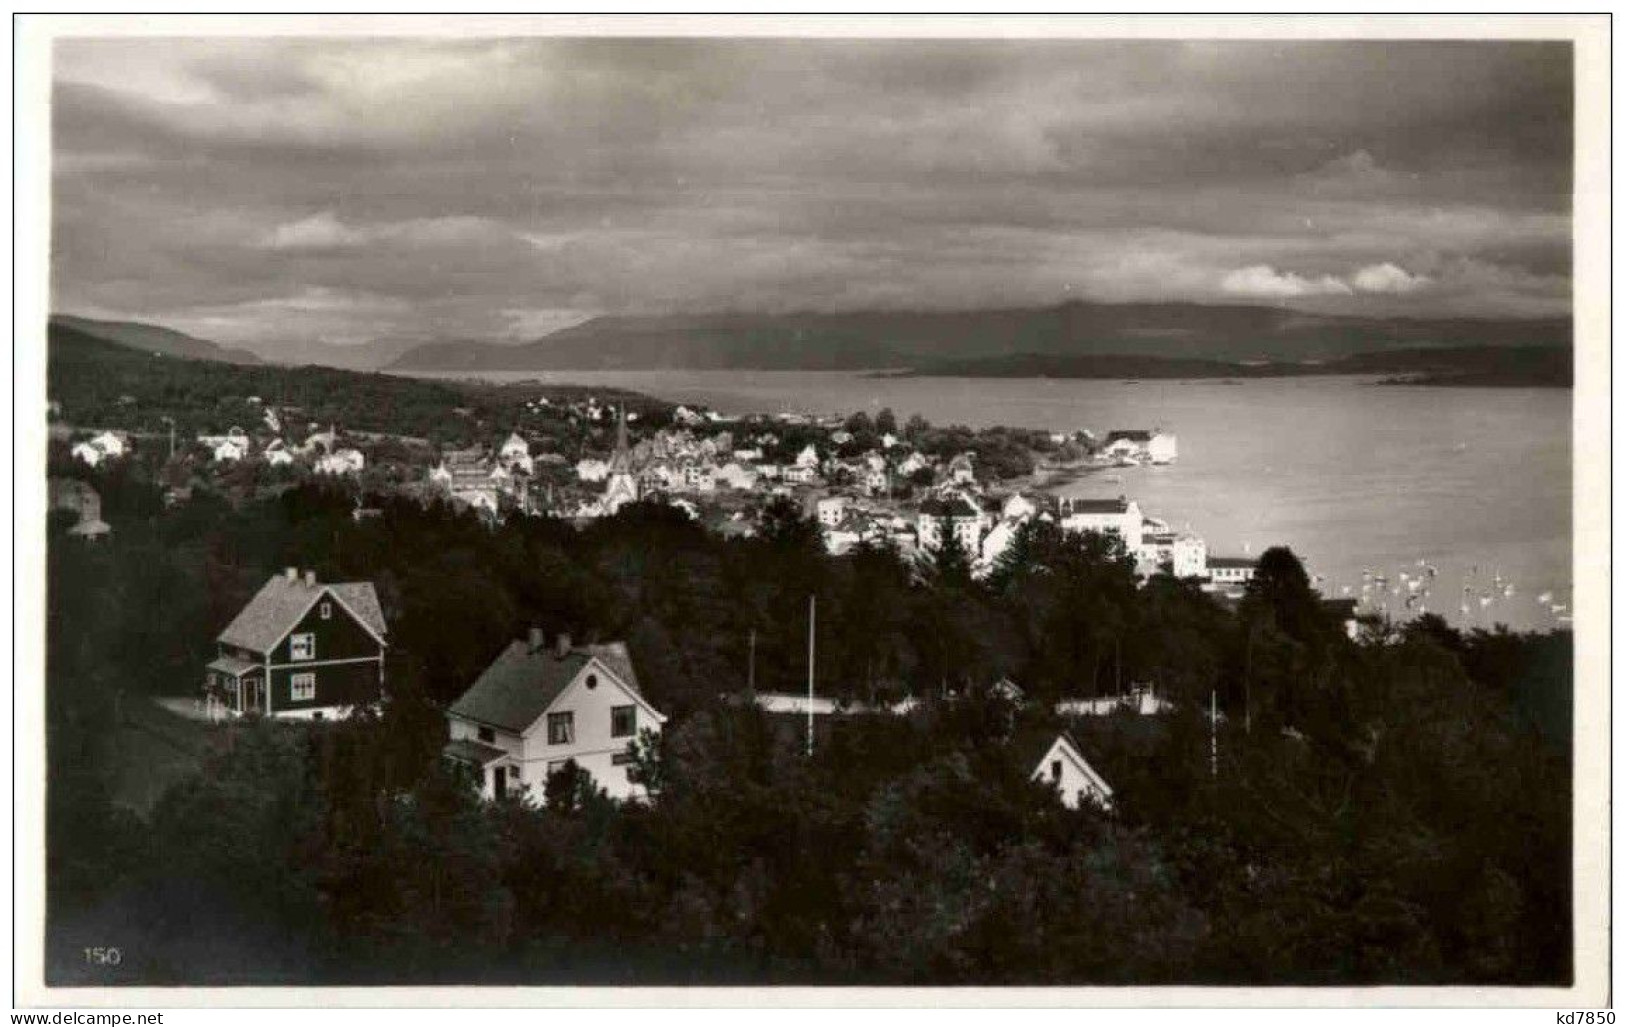 Molde - Norway